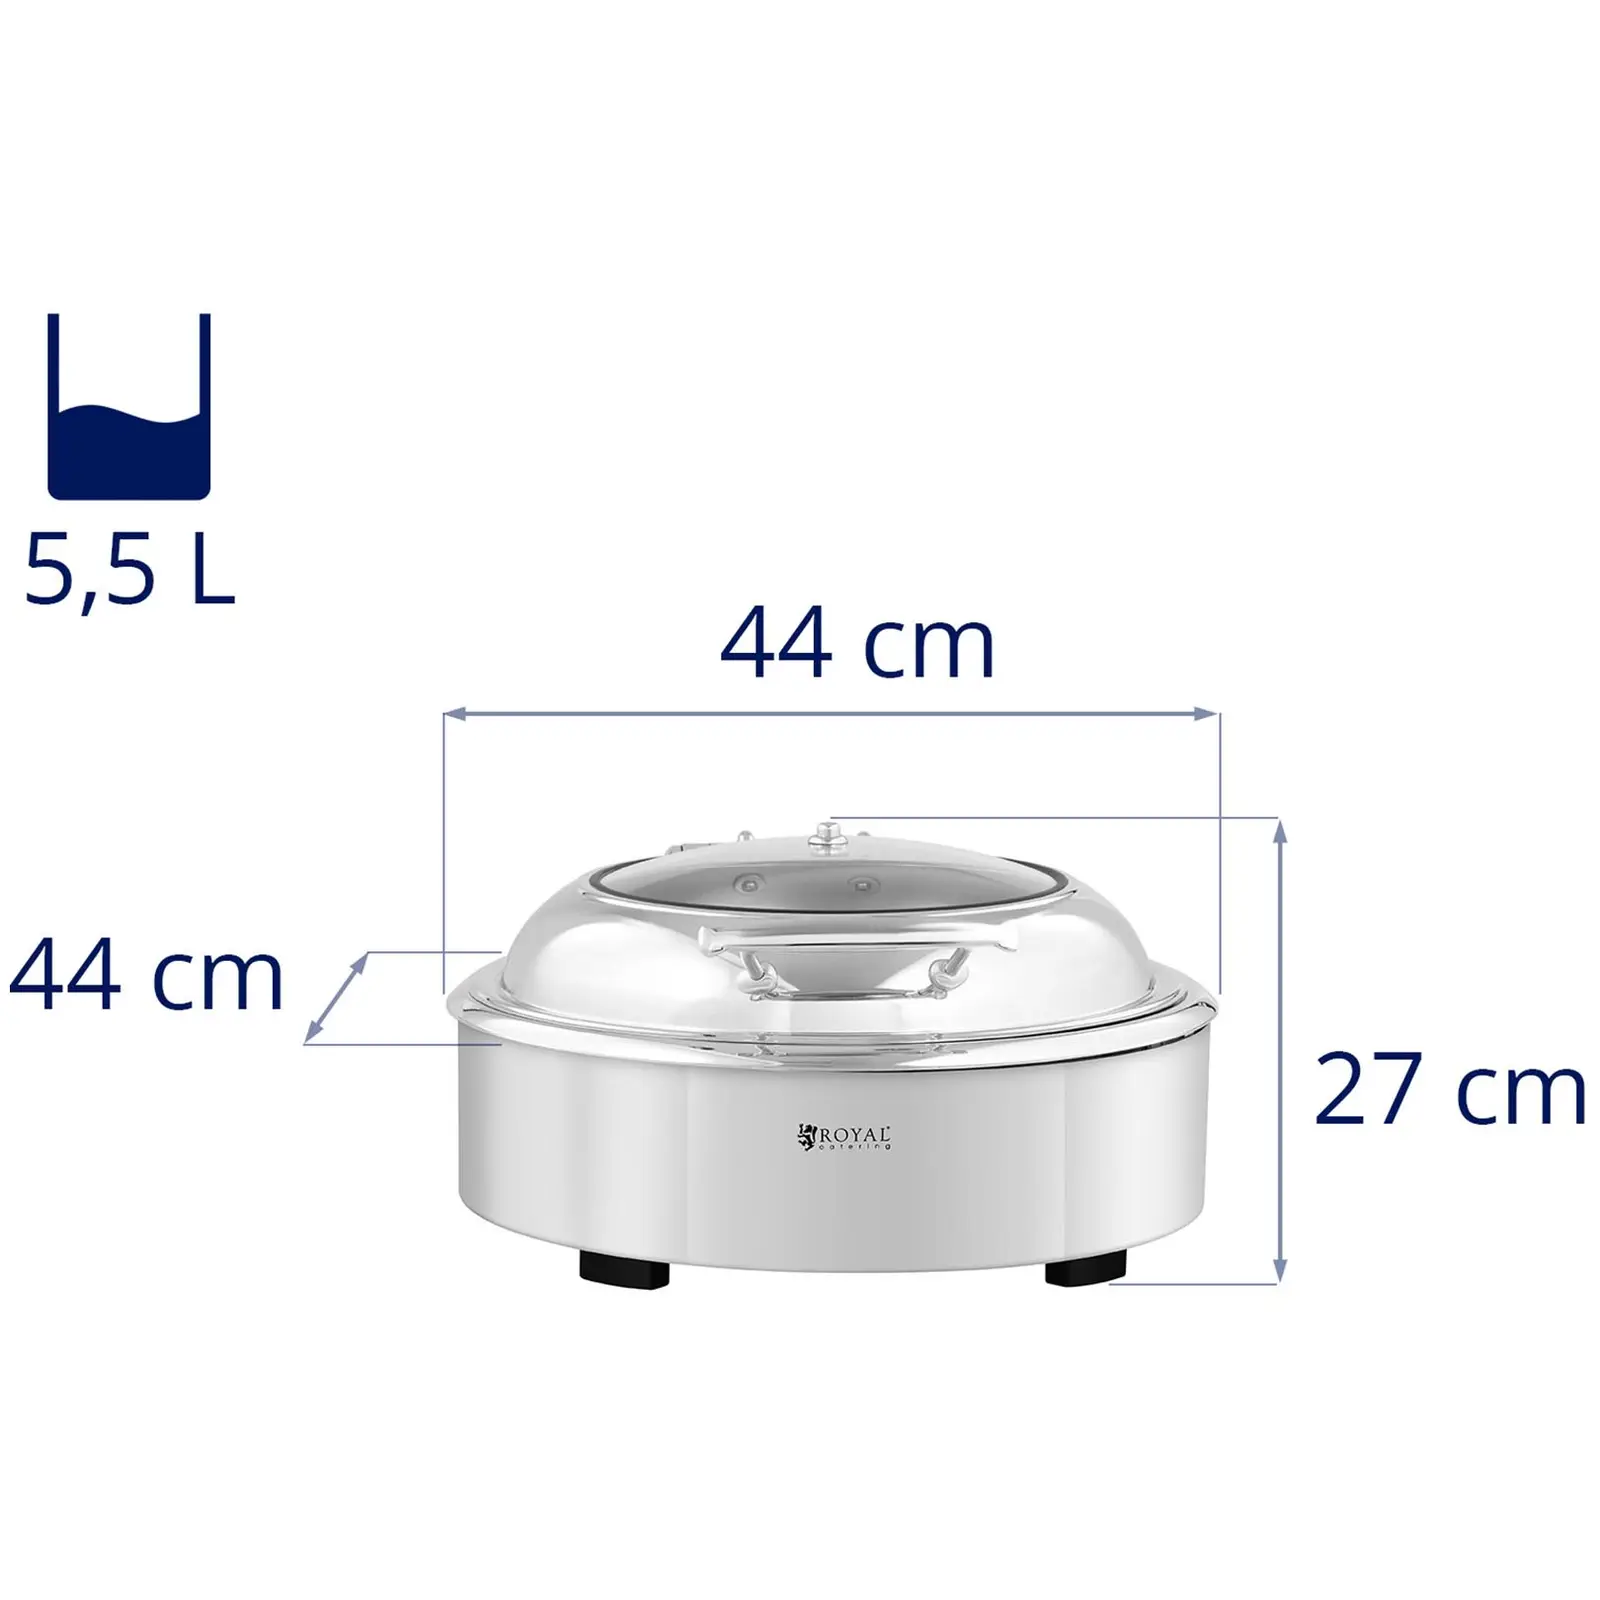 B-varer Chafing Dish - rund med visningsvindu - Royal Catering - 5.5 L - {{number_of_chafing_fuel_cells_643}} brenncelle